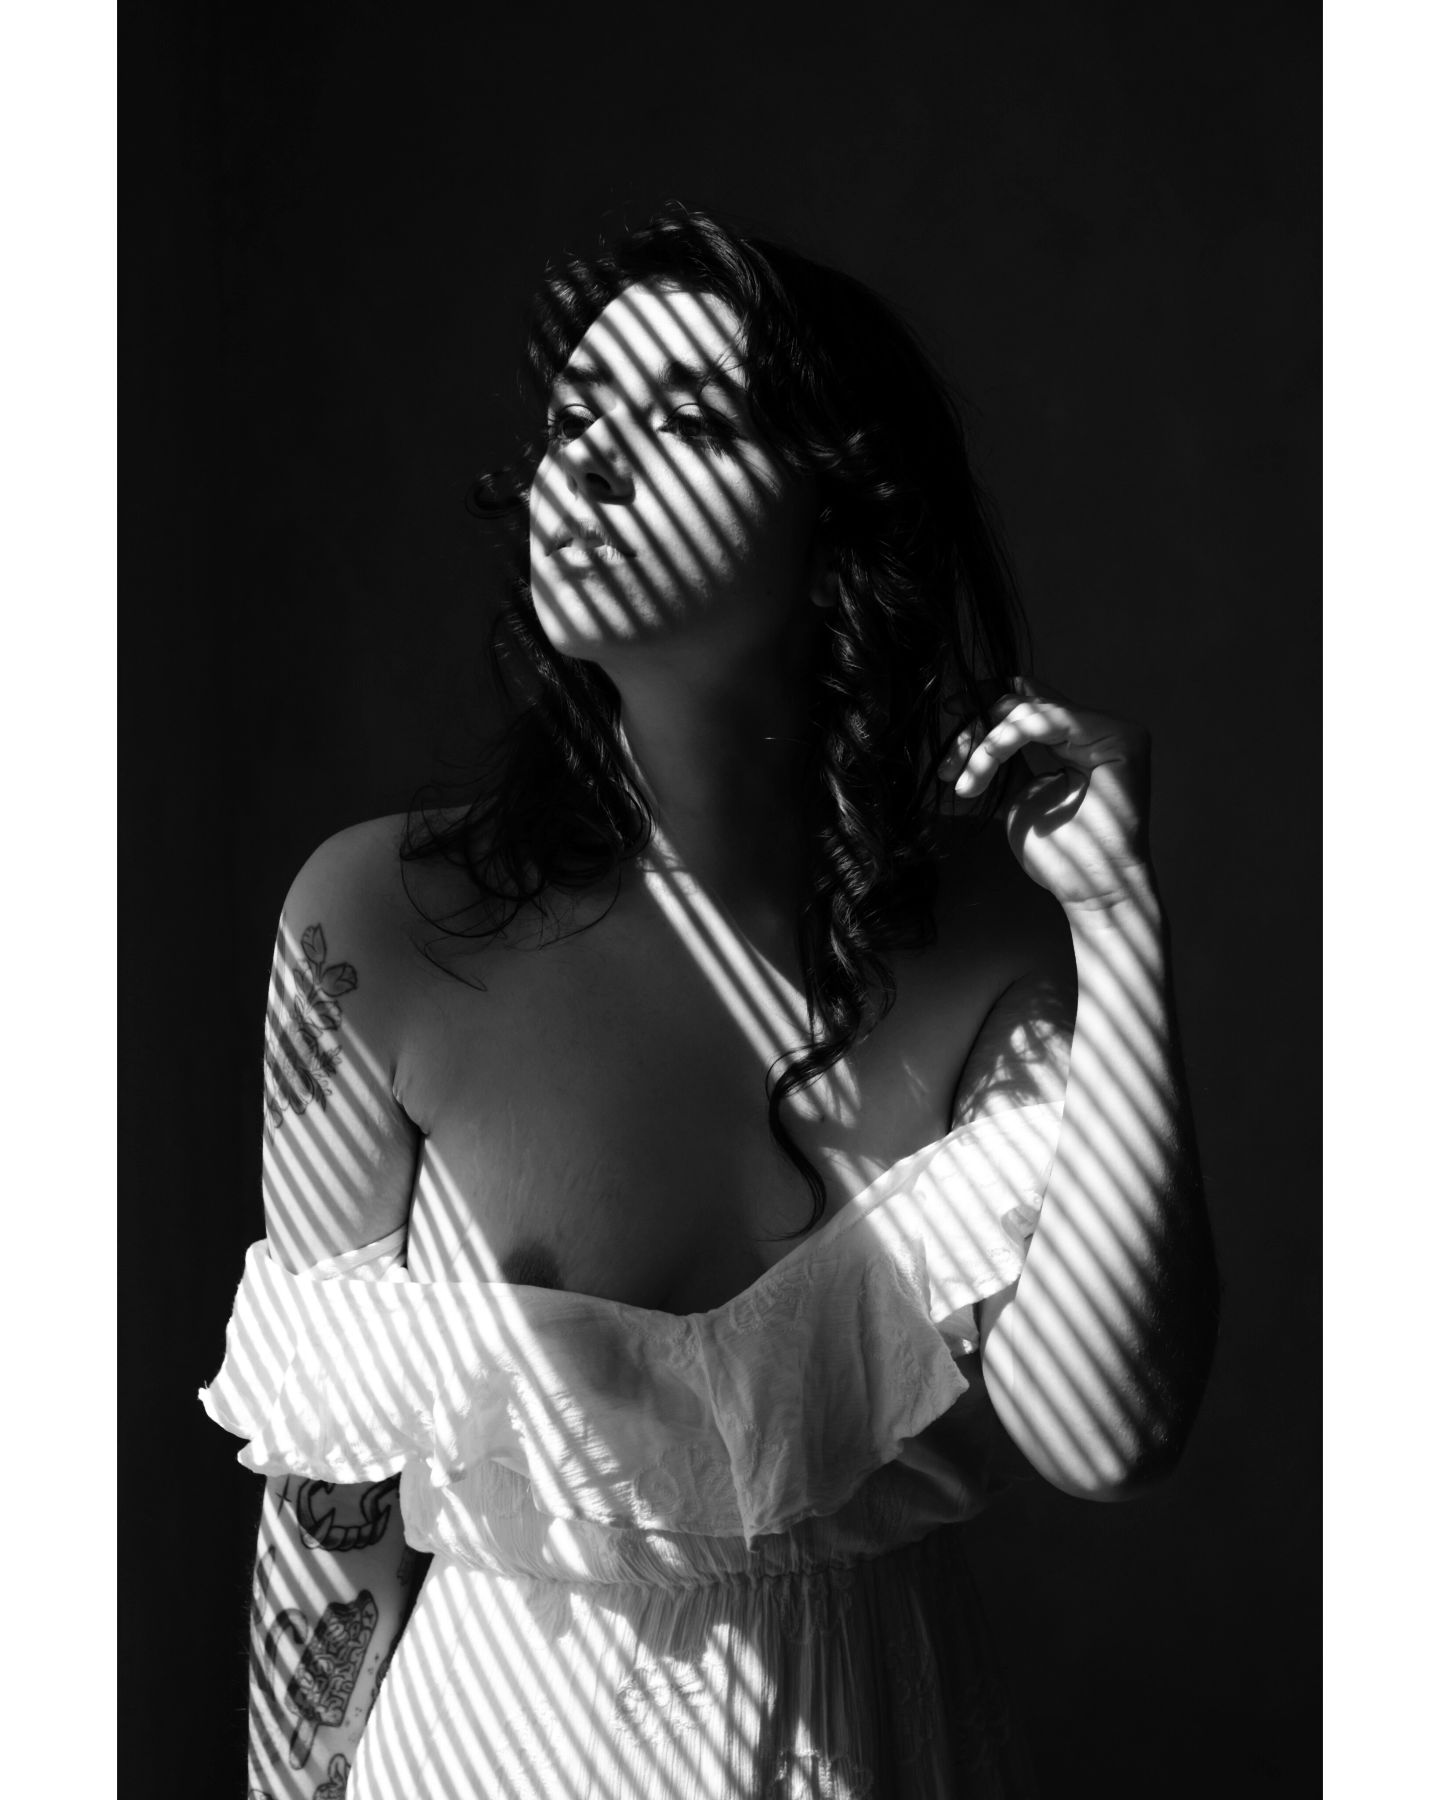 The shadow whispered,
Abolish me, make me light. 

- Charles Wright 

📸 @beggasusphoto 
📍 Abandoned House Shoot hosted by @the.seasonal.scottish.lass 

#blackandwhitephotography #photooftheday #shadows #bnwphotography #portraitmood #pnwphotographer #washingtonmodel #letsmakeart #abandonedplaces #bnwmood #portraitphotography #shadowandlight #windows #ladyinwhite #whitedress #darkhair #brunette #alternativemodel #washingtonphotography #pnwcreatives